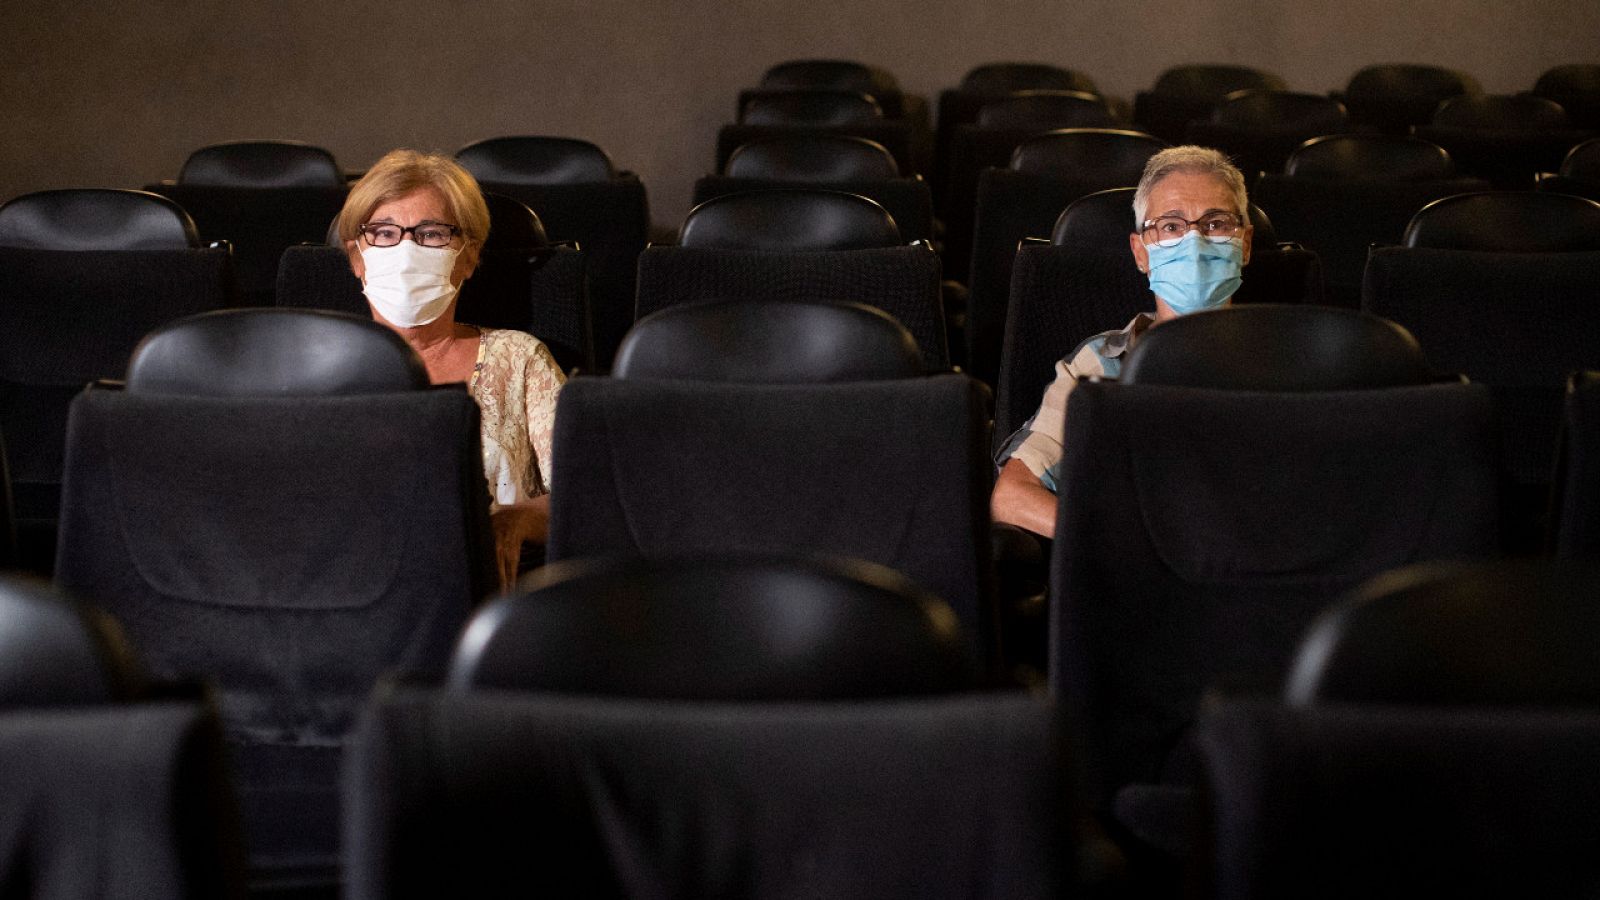 Dos espectadores vuelven al cine manteniendo la distancia de seguridad en Barcelona